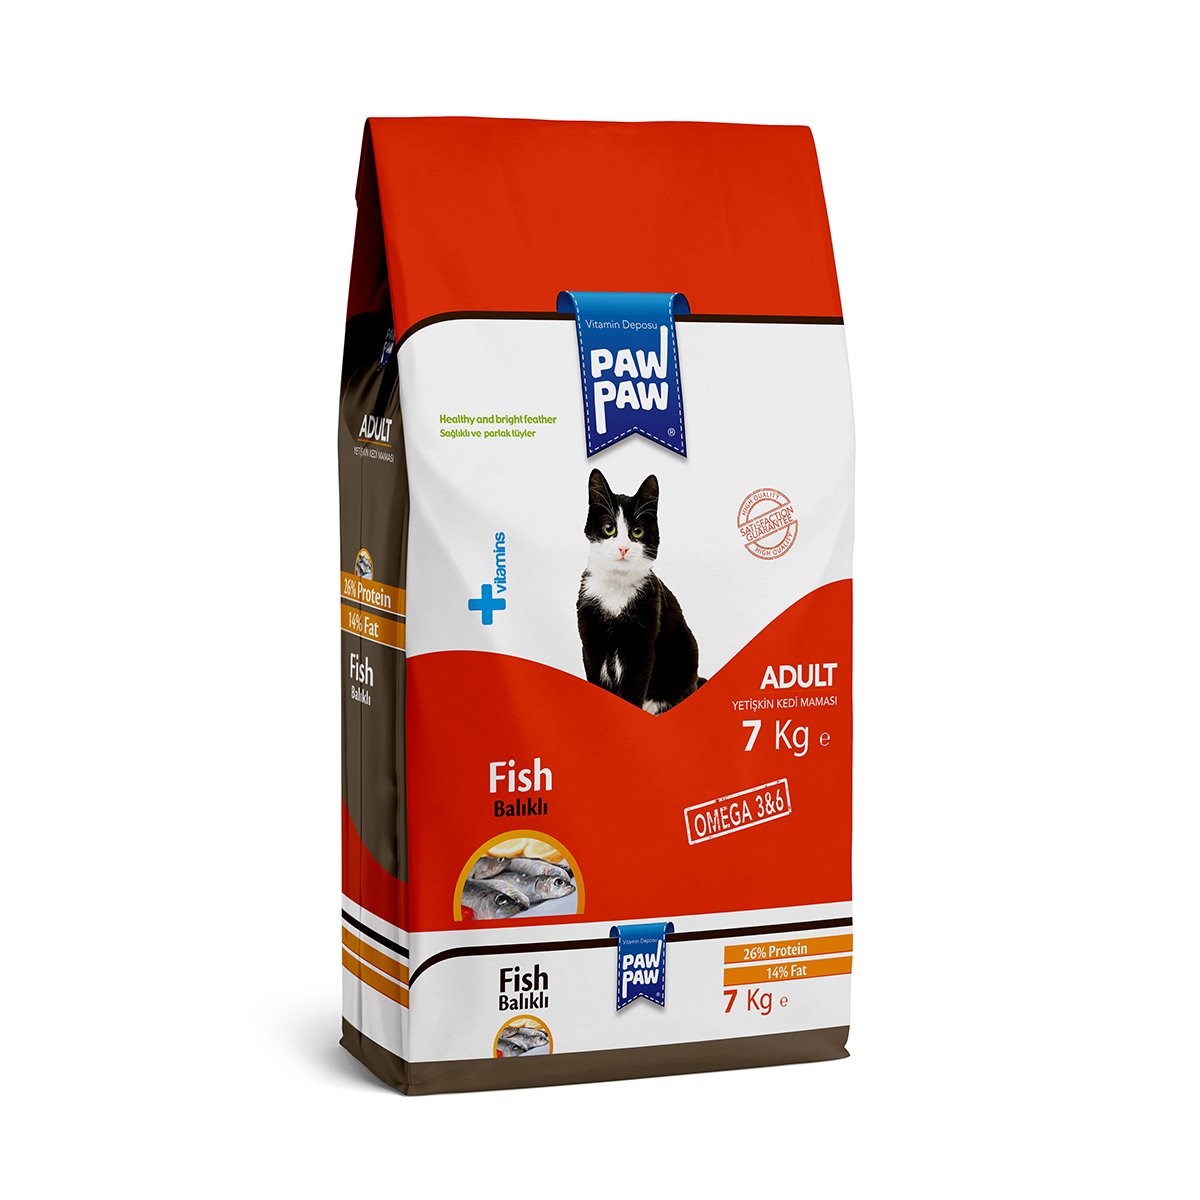 Market701 | Pawpaw Yetişkin Kedi Maması (Balıklı) 7kg